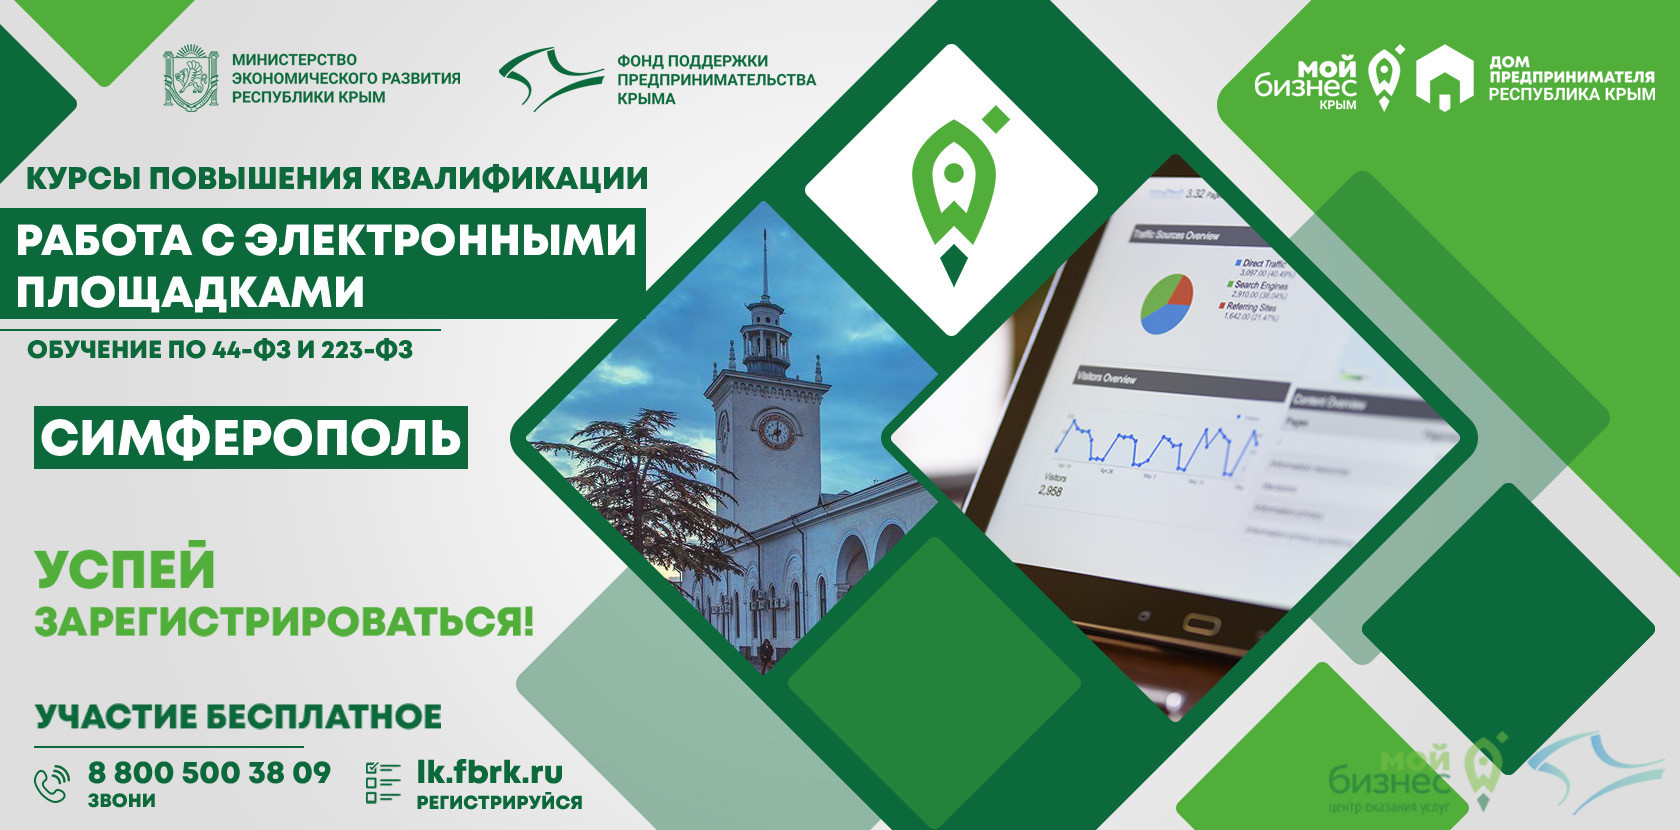 Старт курсов повышения квалификации «Работа с электронными площадками» в Симферополе совсем скоро!